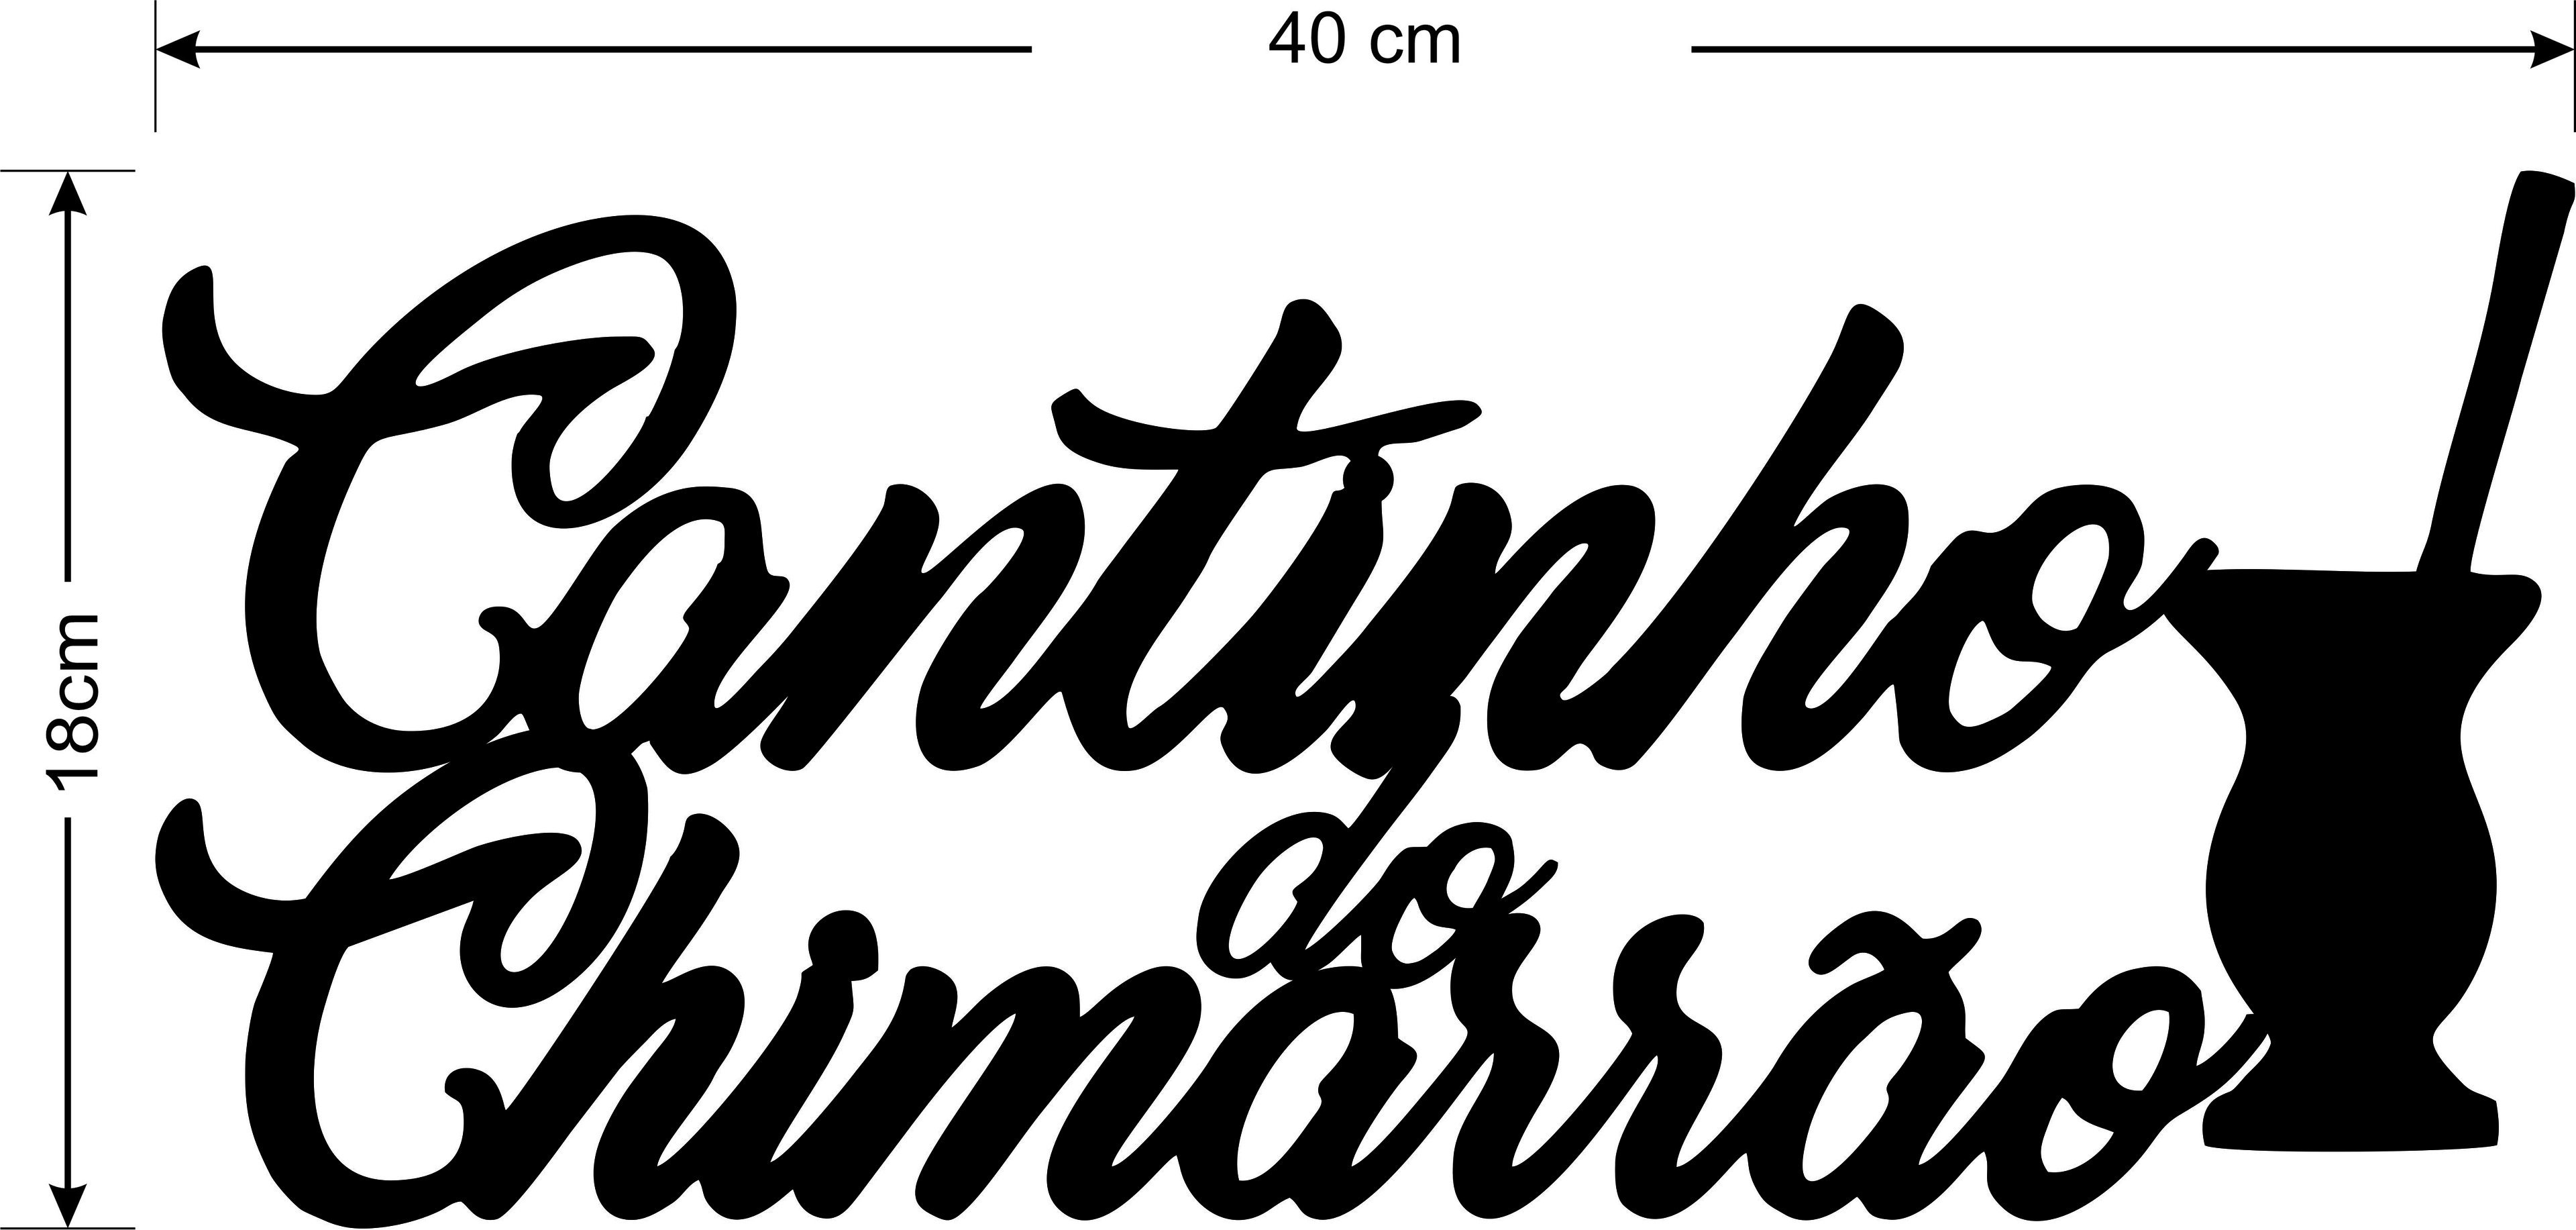 Painel Decorativo Cantinho Do Chimarrão Gaúcho Mdf Preto - 3